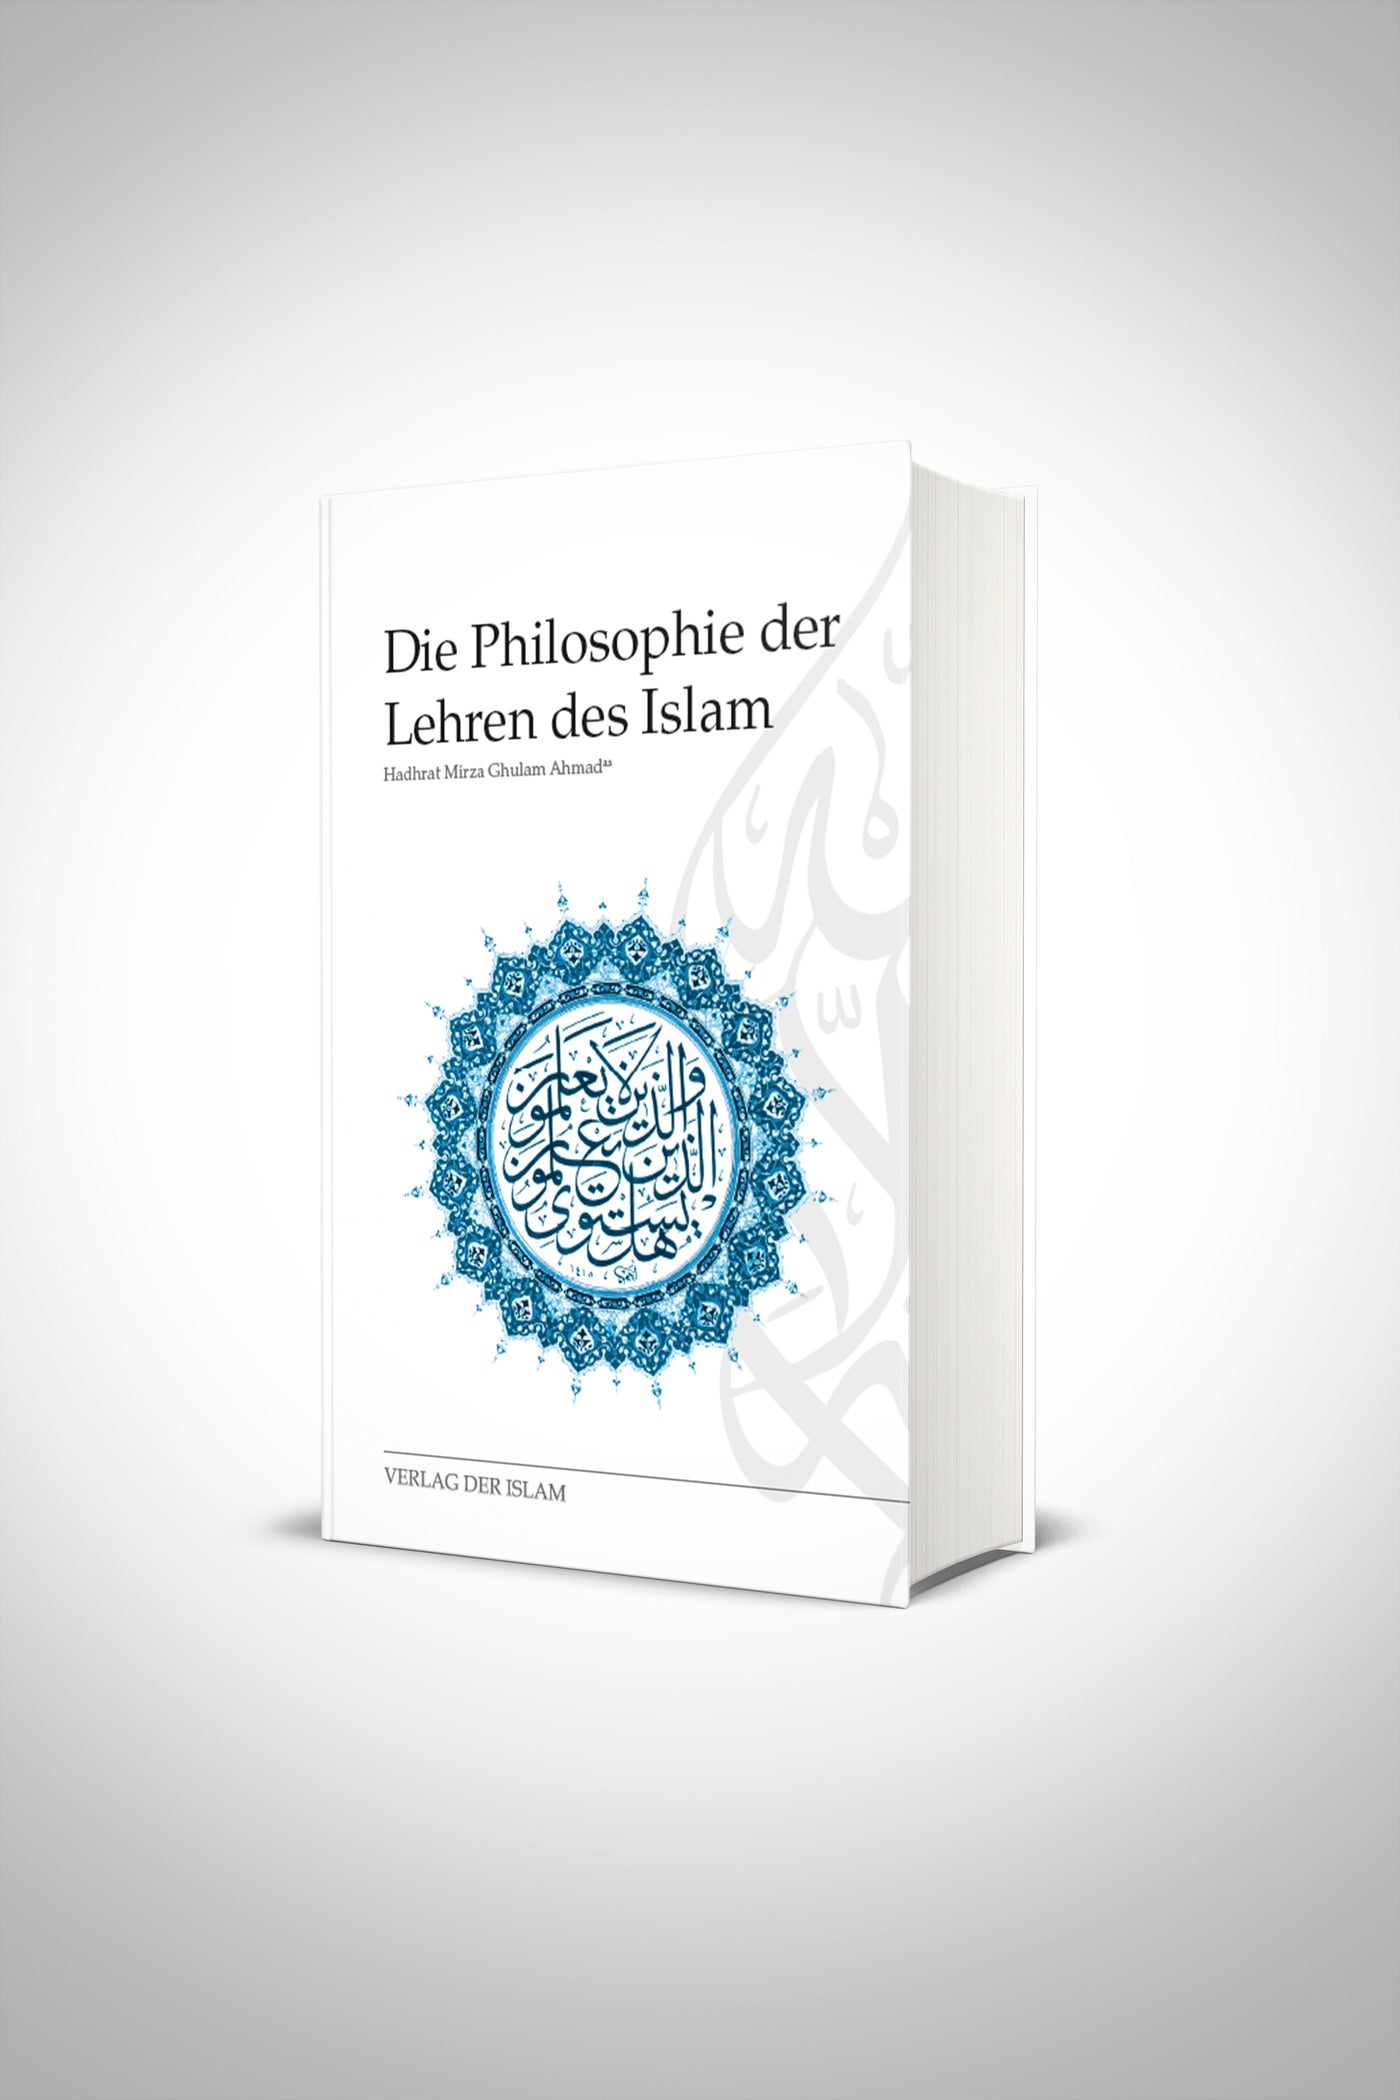 Die Philosohpie der Lehren des Islam